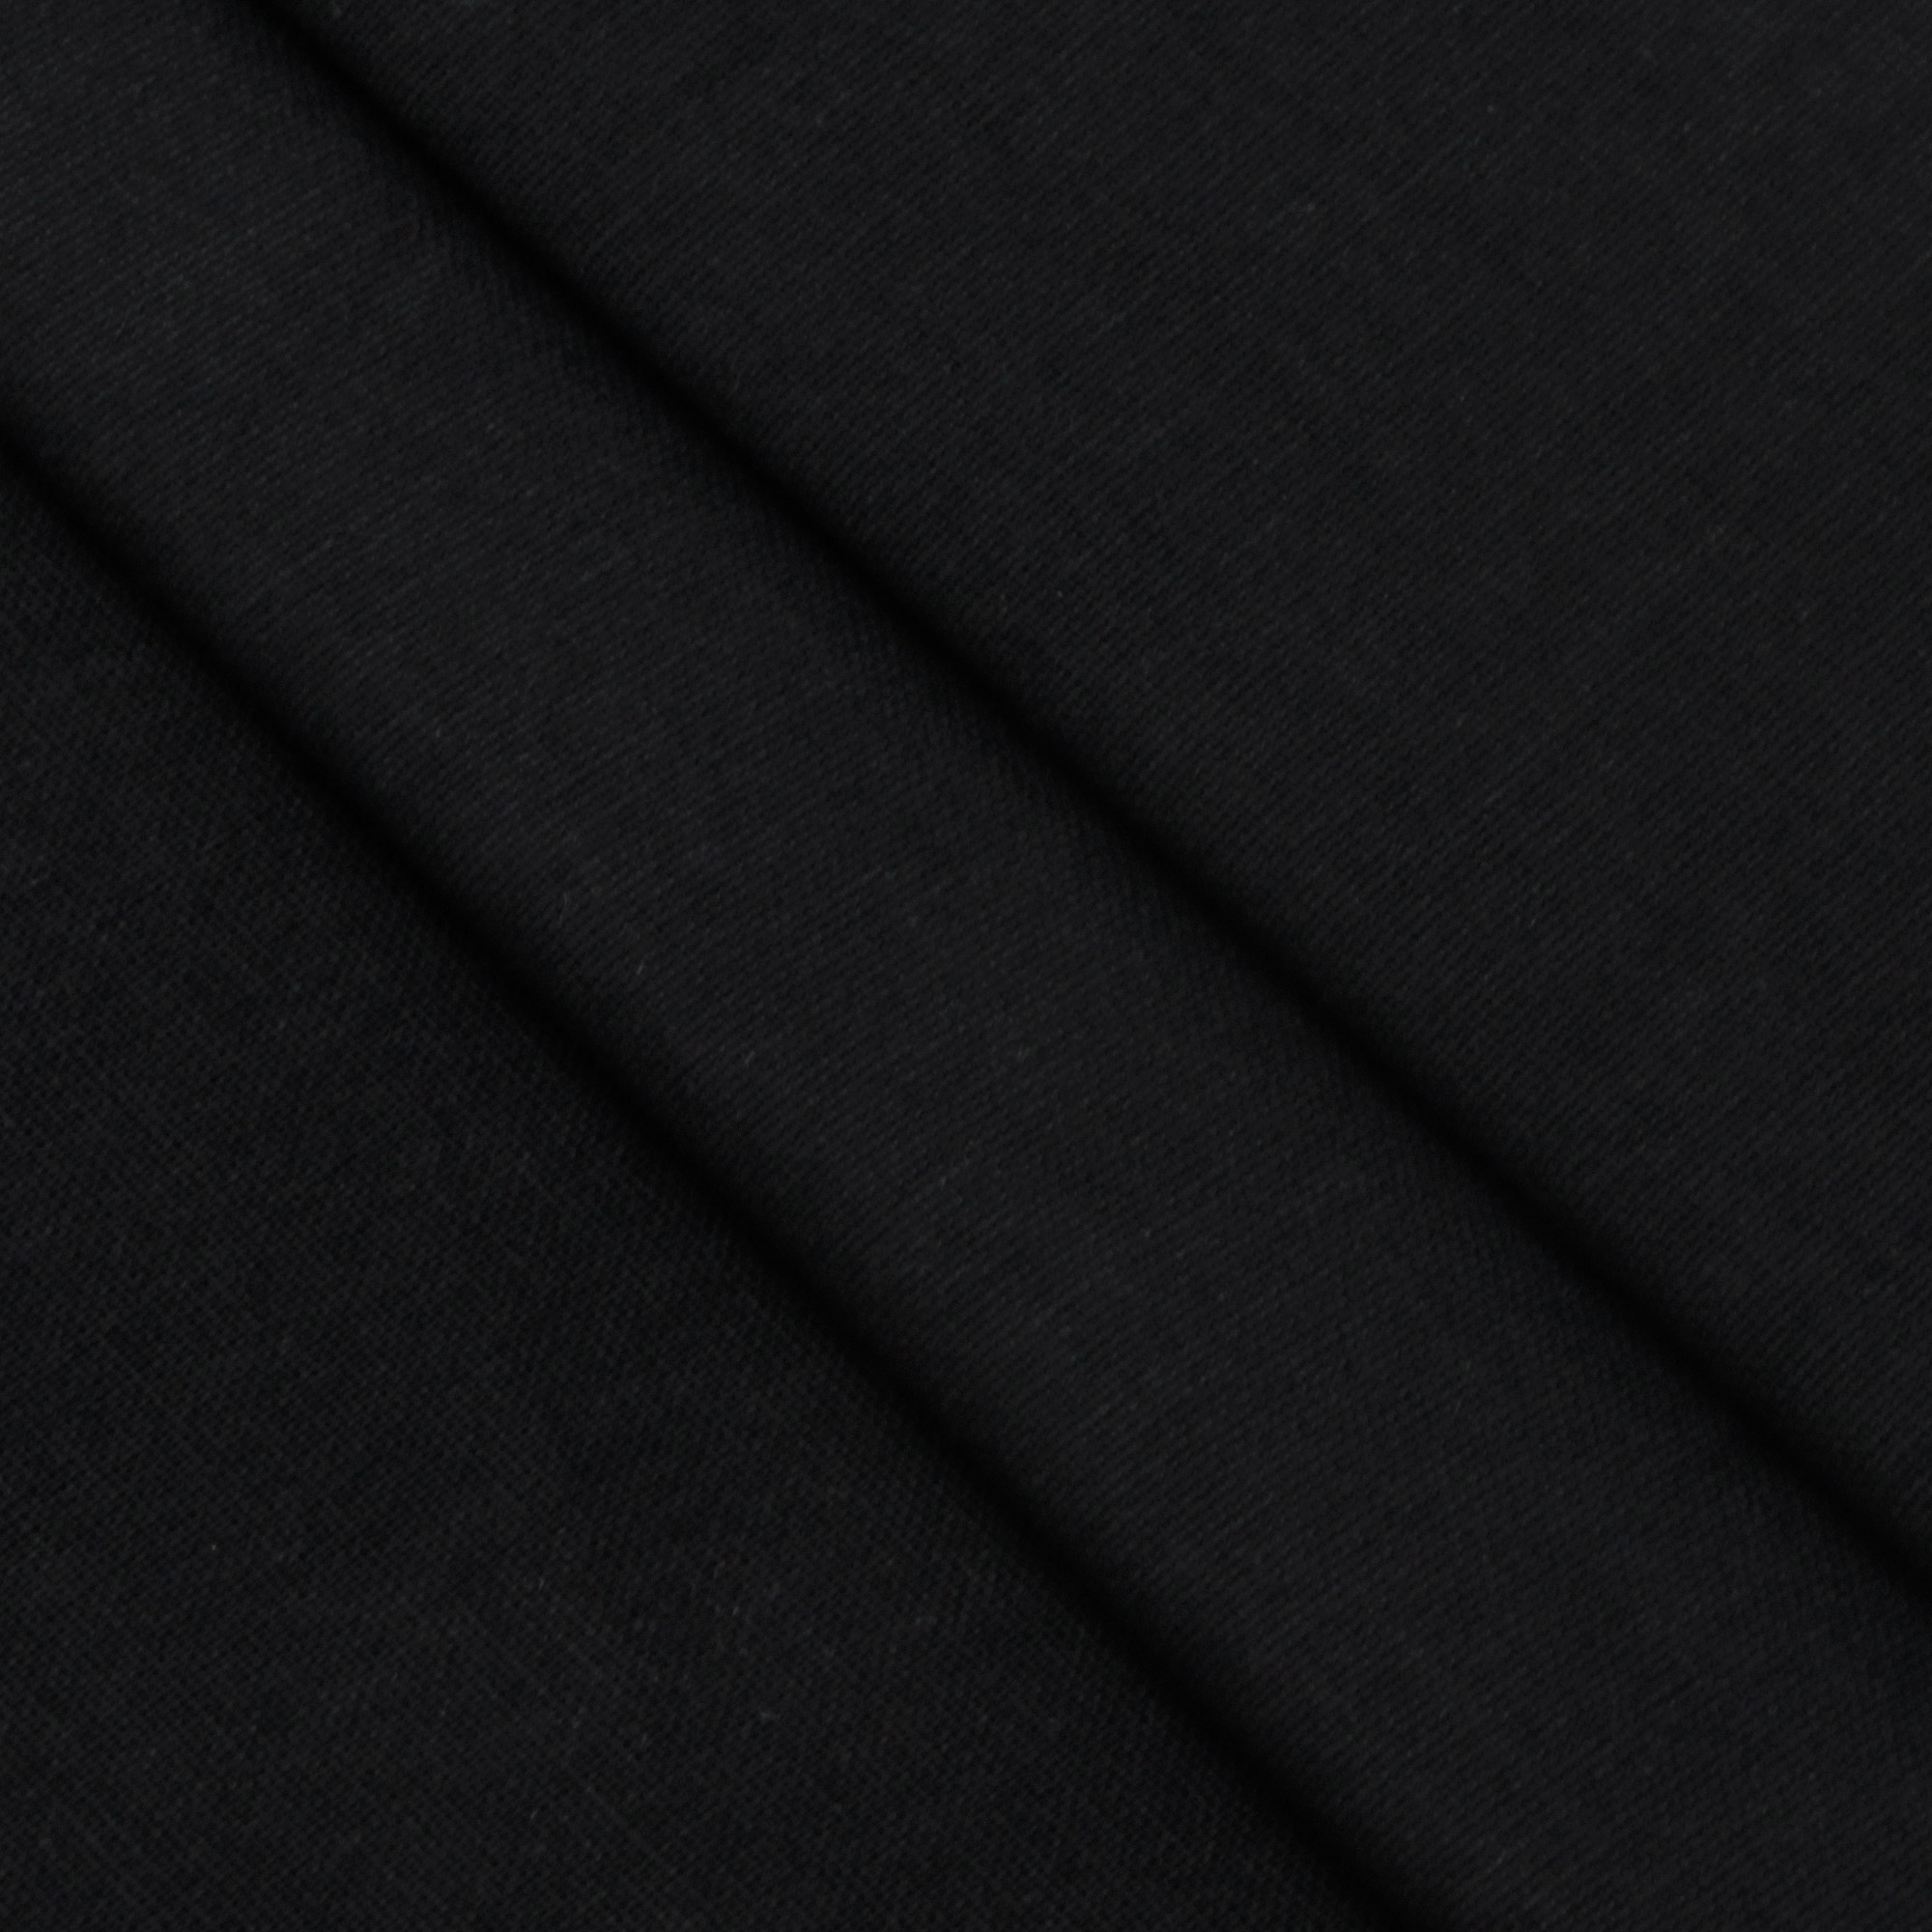 Комплект постельного белья La Besse Ранфорс чёрный Кинг сайз, размер Кинг сайз - фото 3